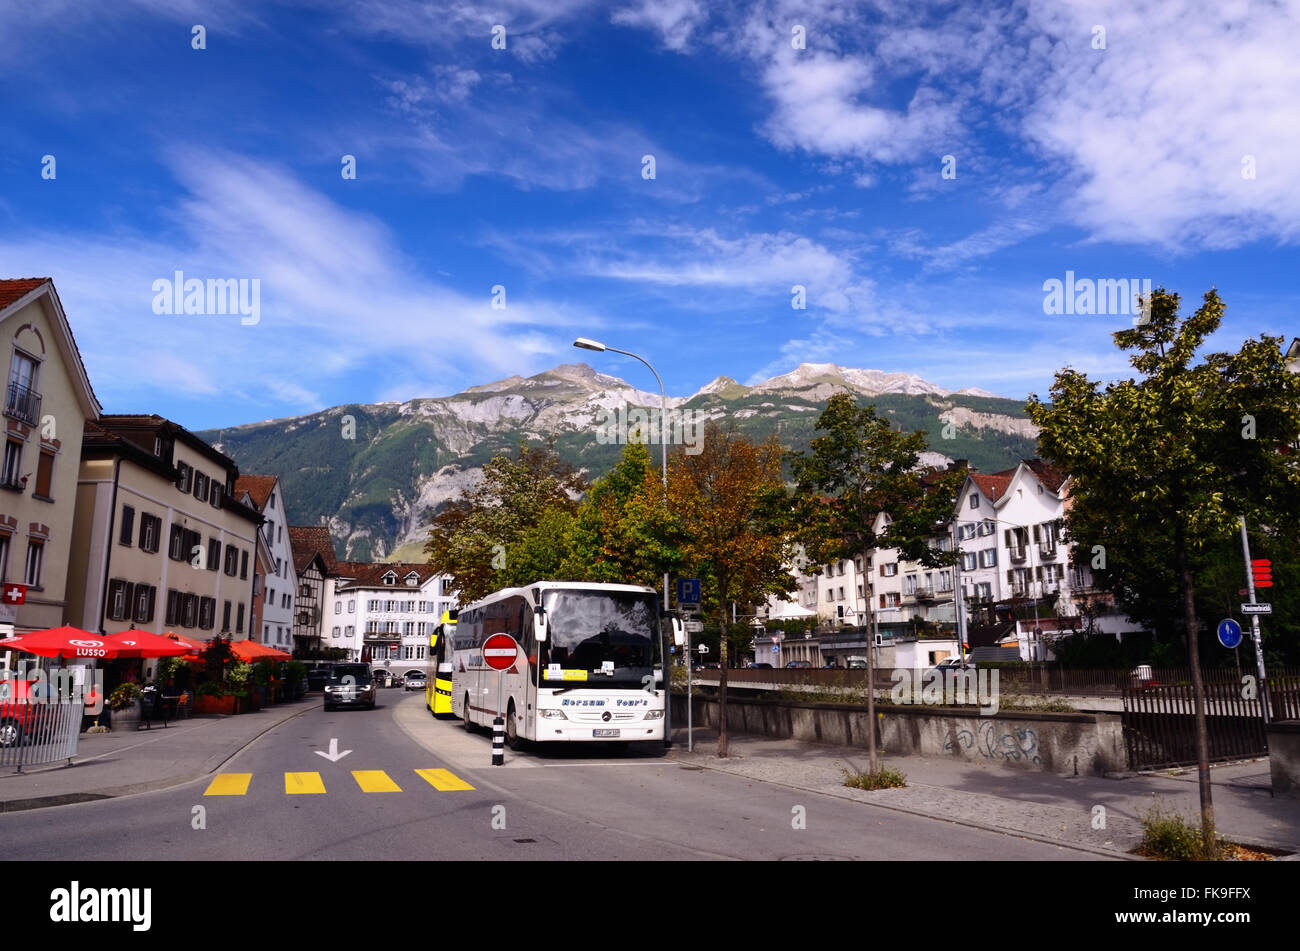 Touristenbus in einer Straße von der Schweizer Stadt Chur (Kanton Graubünden, Ostschweiz) an einem schönen Tag Stockfoto